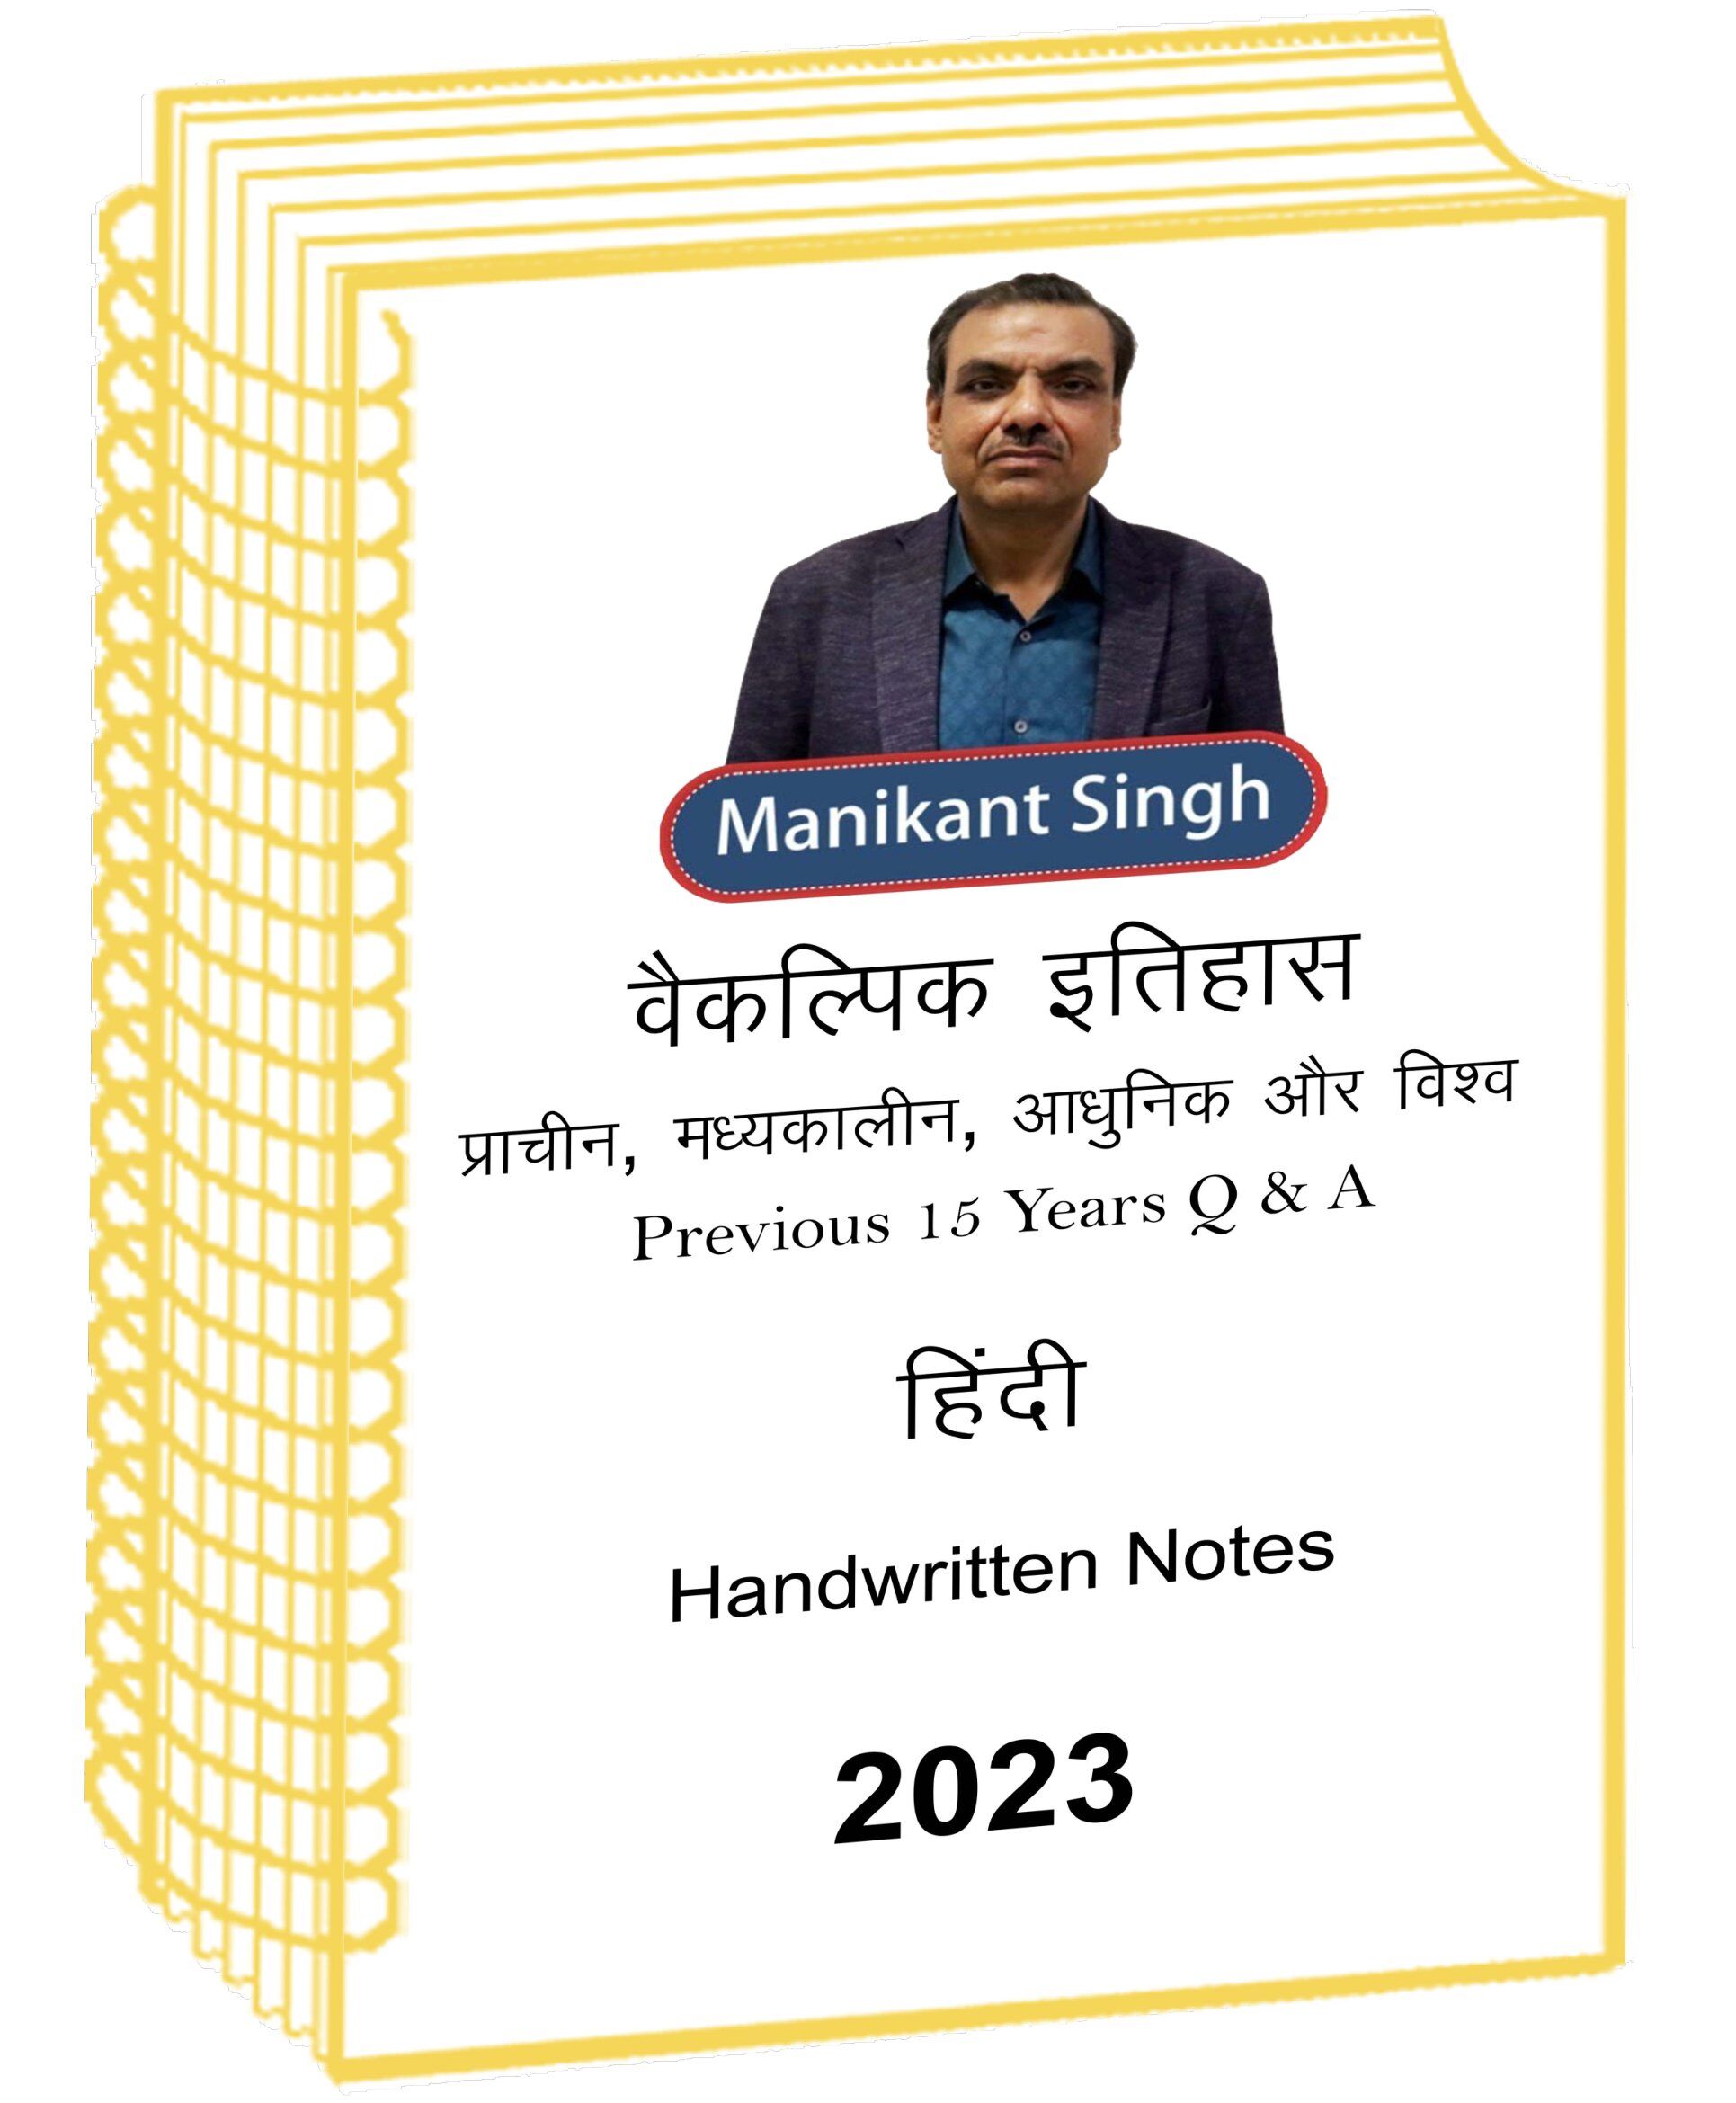 Manikant Singh Sir Praacheen Madhyakaaleen Aadhunik aur Vishv Itihaas Optional Class Notes in Hindi with Previous 15 Years Q an A